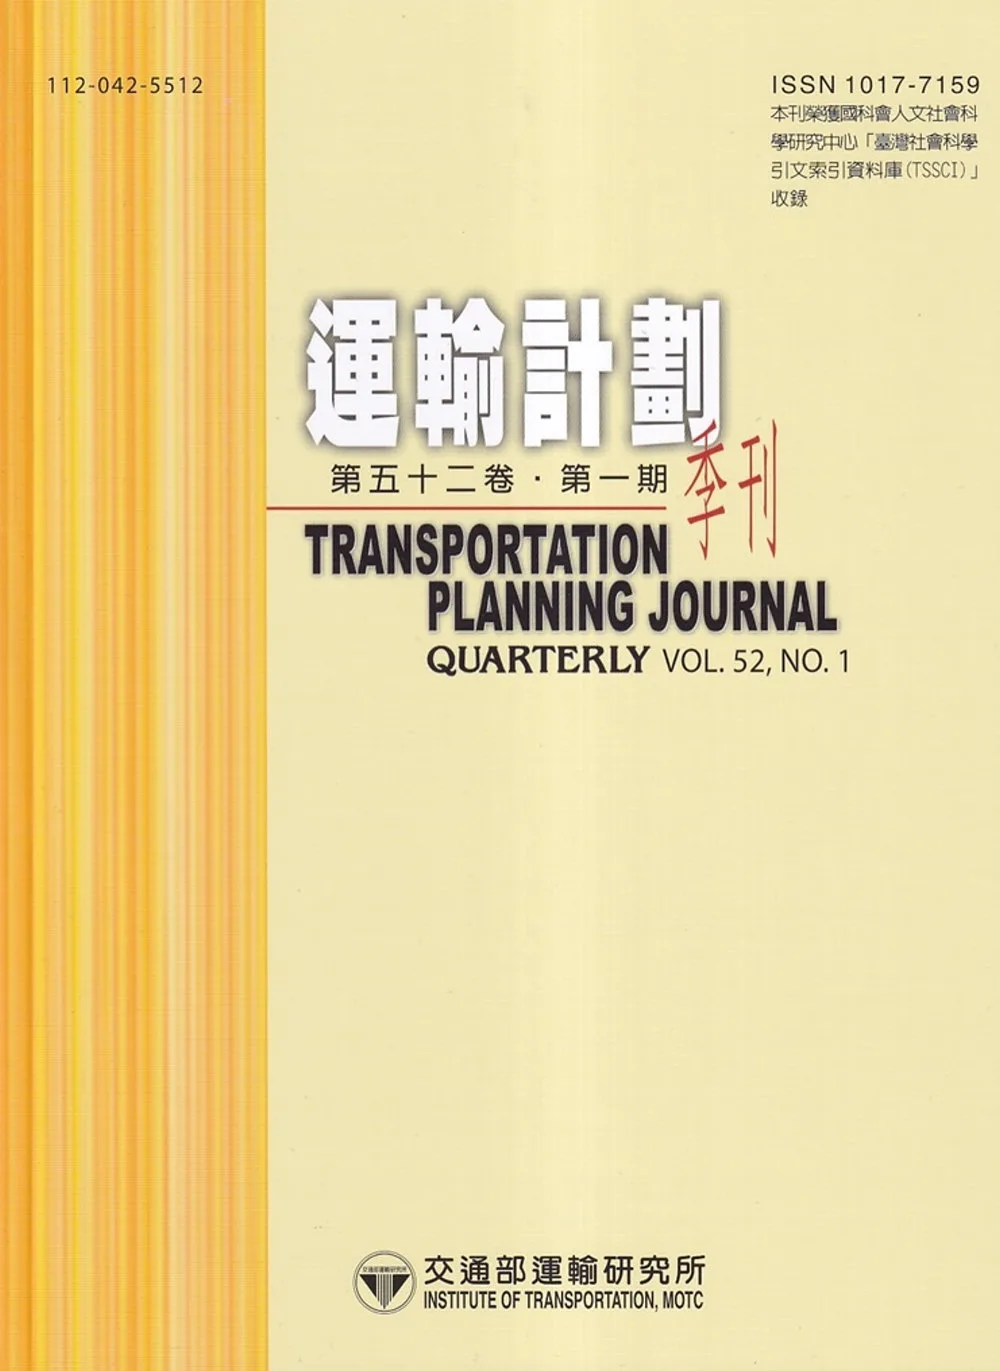 運輸計劃季刊52卷1期(112/03)：服務接觸、關係品質對顧客忠誠度影響之研究-以海運承攬運送業為例